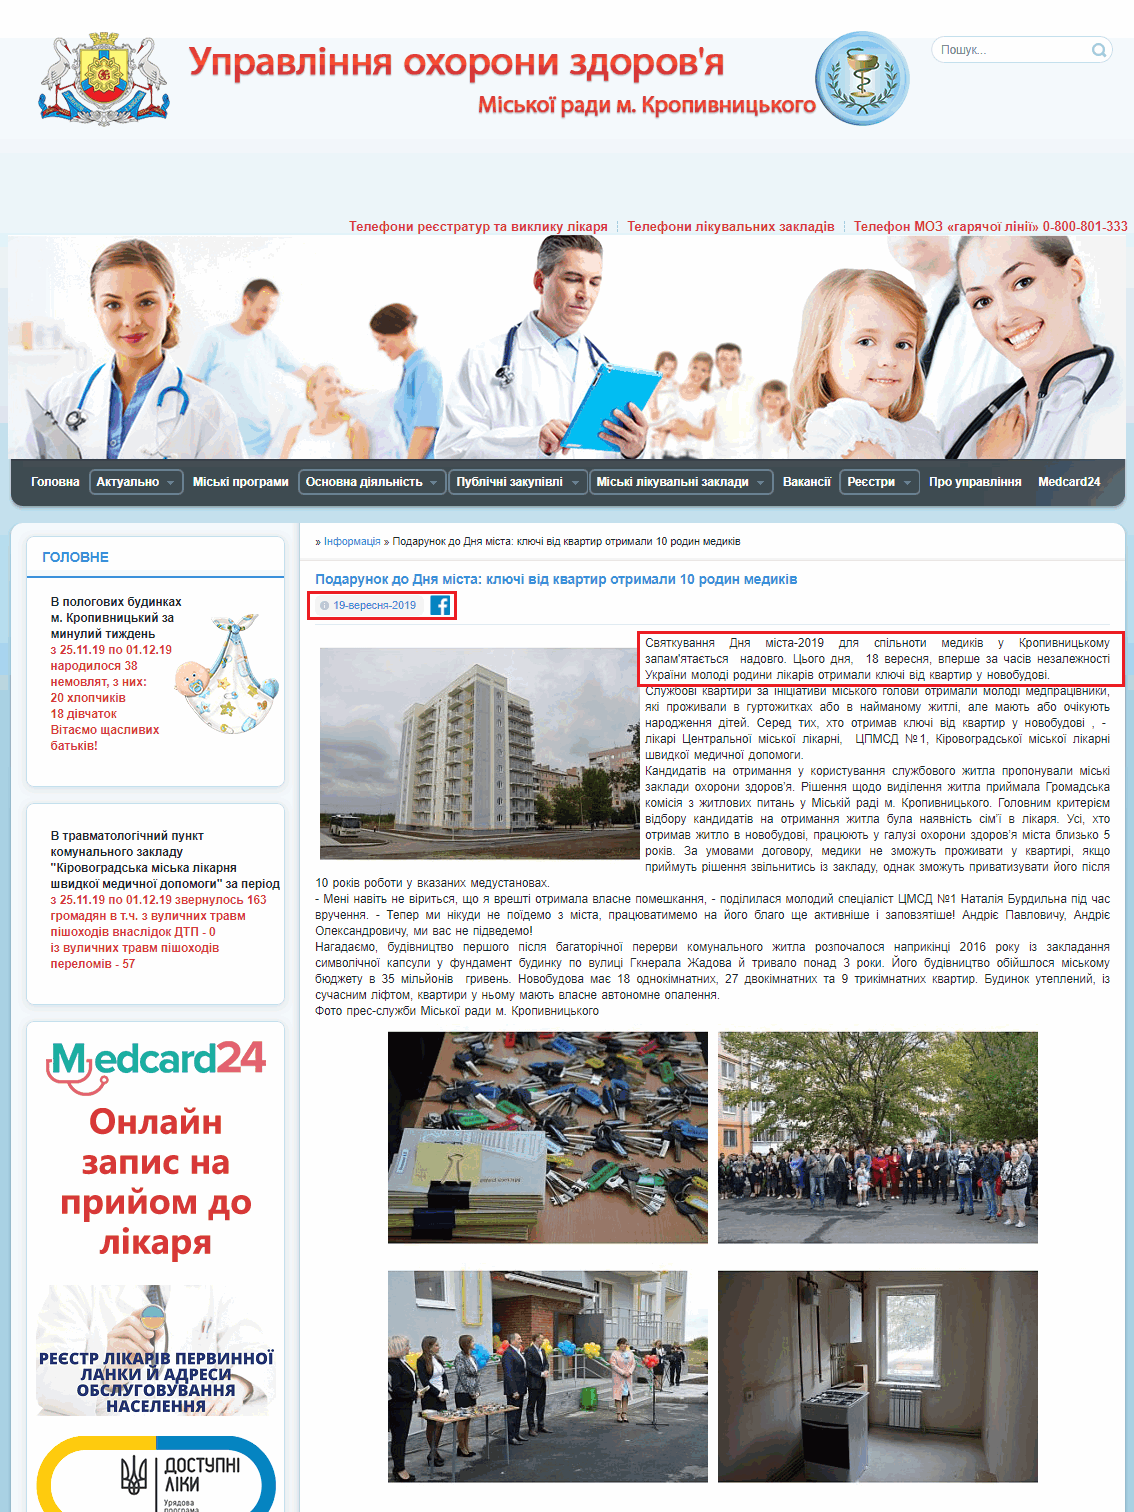 https://uozkmr.gov.ua/main/1009-podarunok-do-dnya-msta-klyuch-vd-kvartir-otrimali-10-rodin-medikv.html